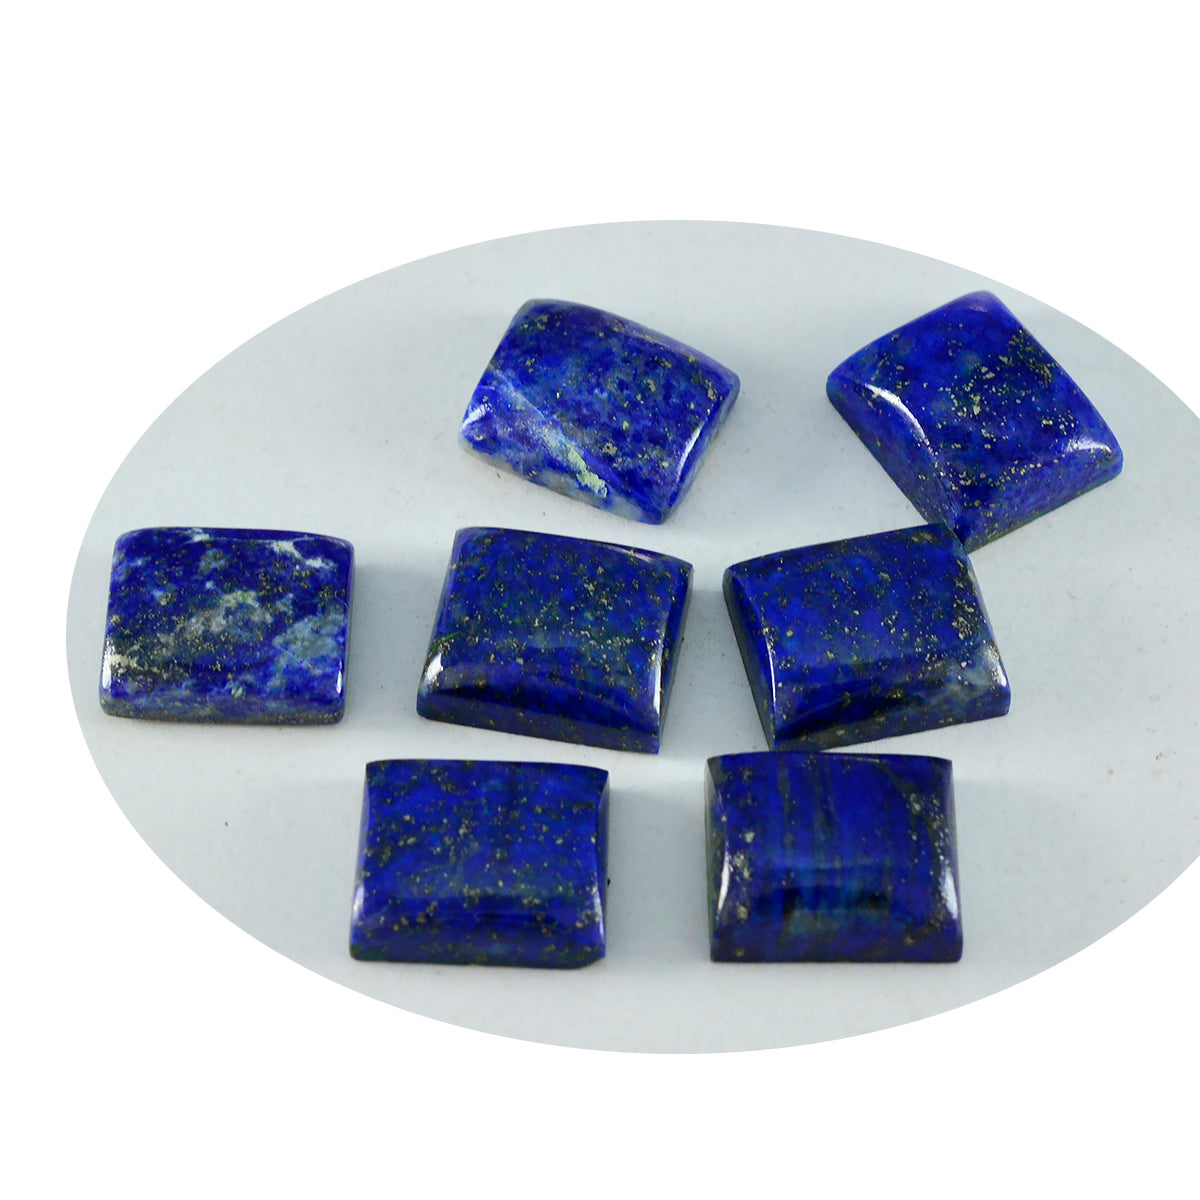 Riyogems 1 Stück blauer Lapislazuli-Cabochon, 7 x 9 mm, Achteckform, süße Qualität, lose Edelsteine